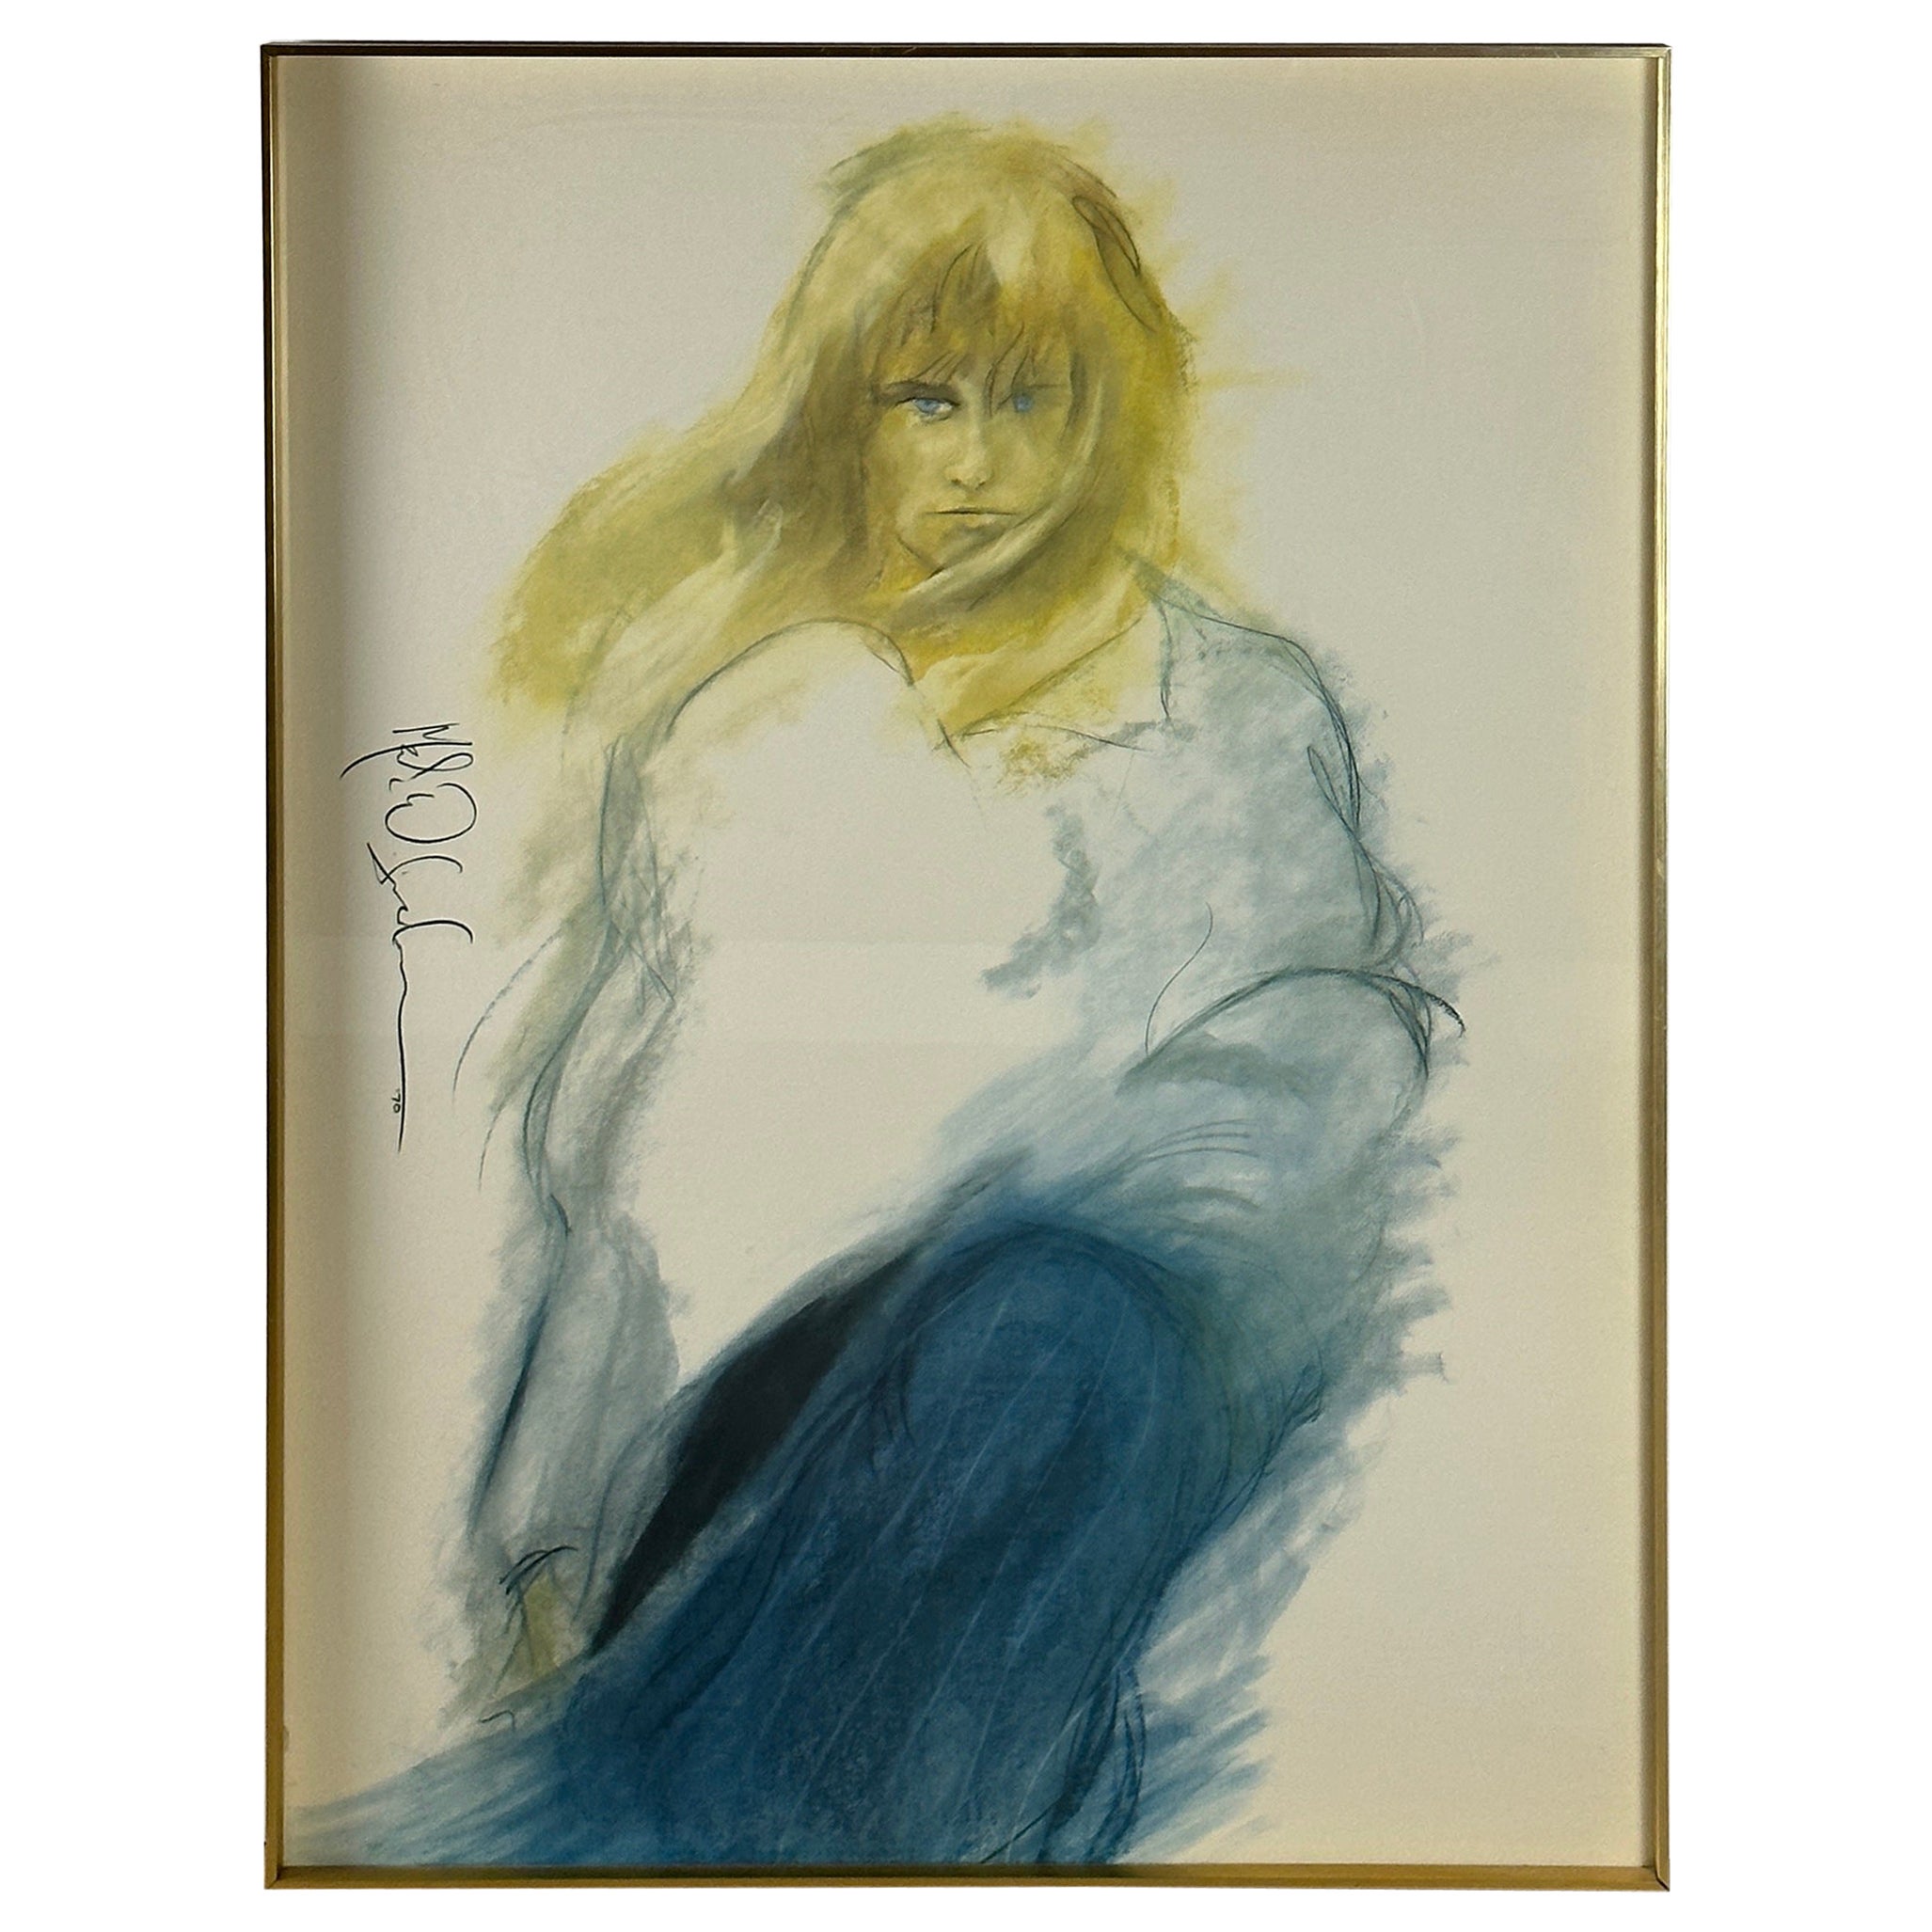  Lithographie d'une jeune fille au vent bleu